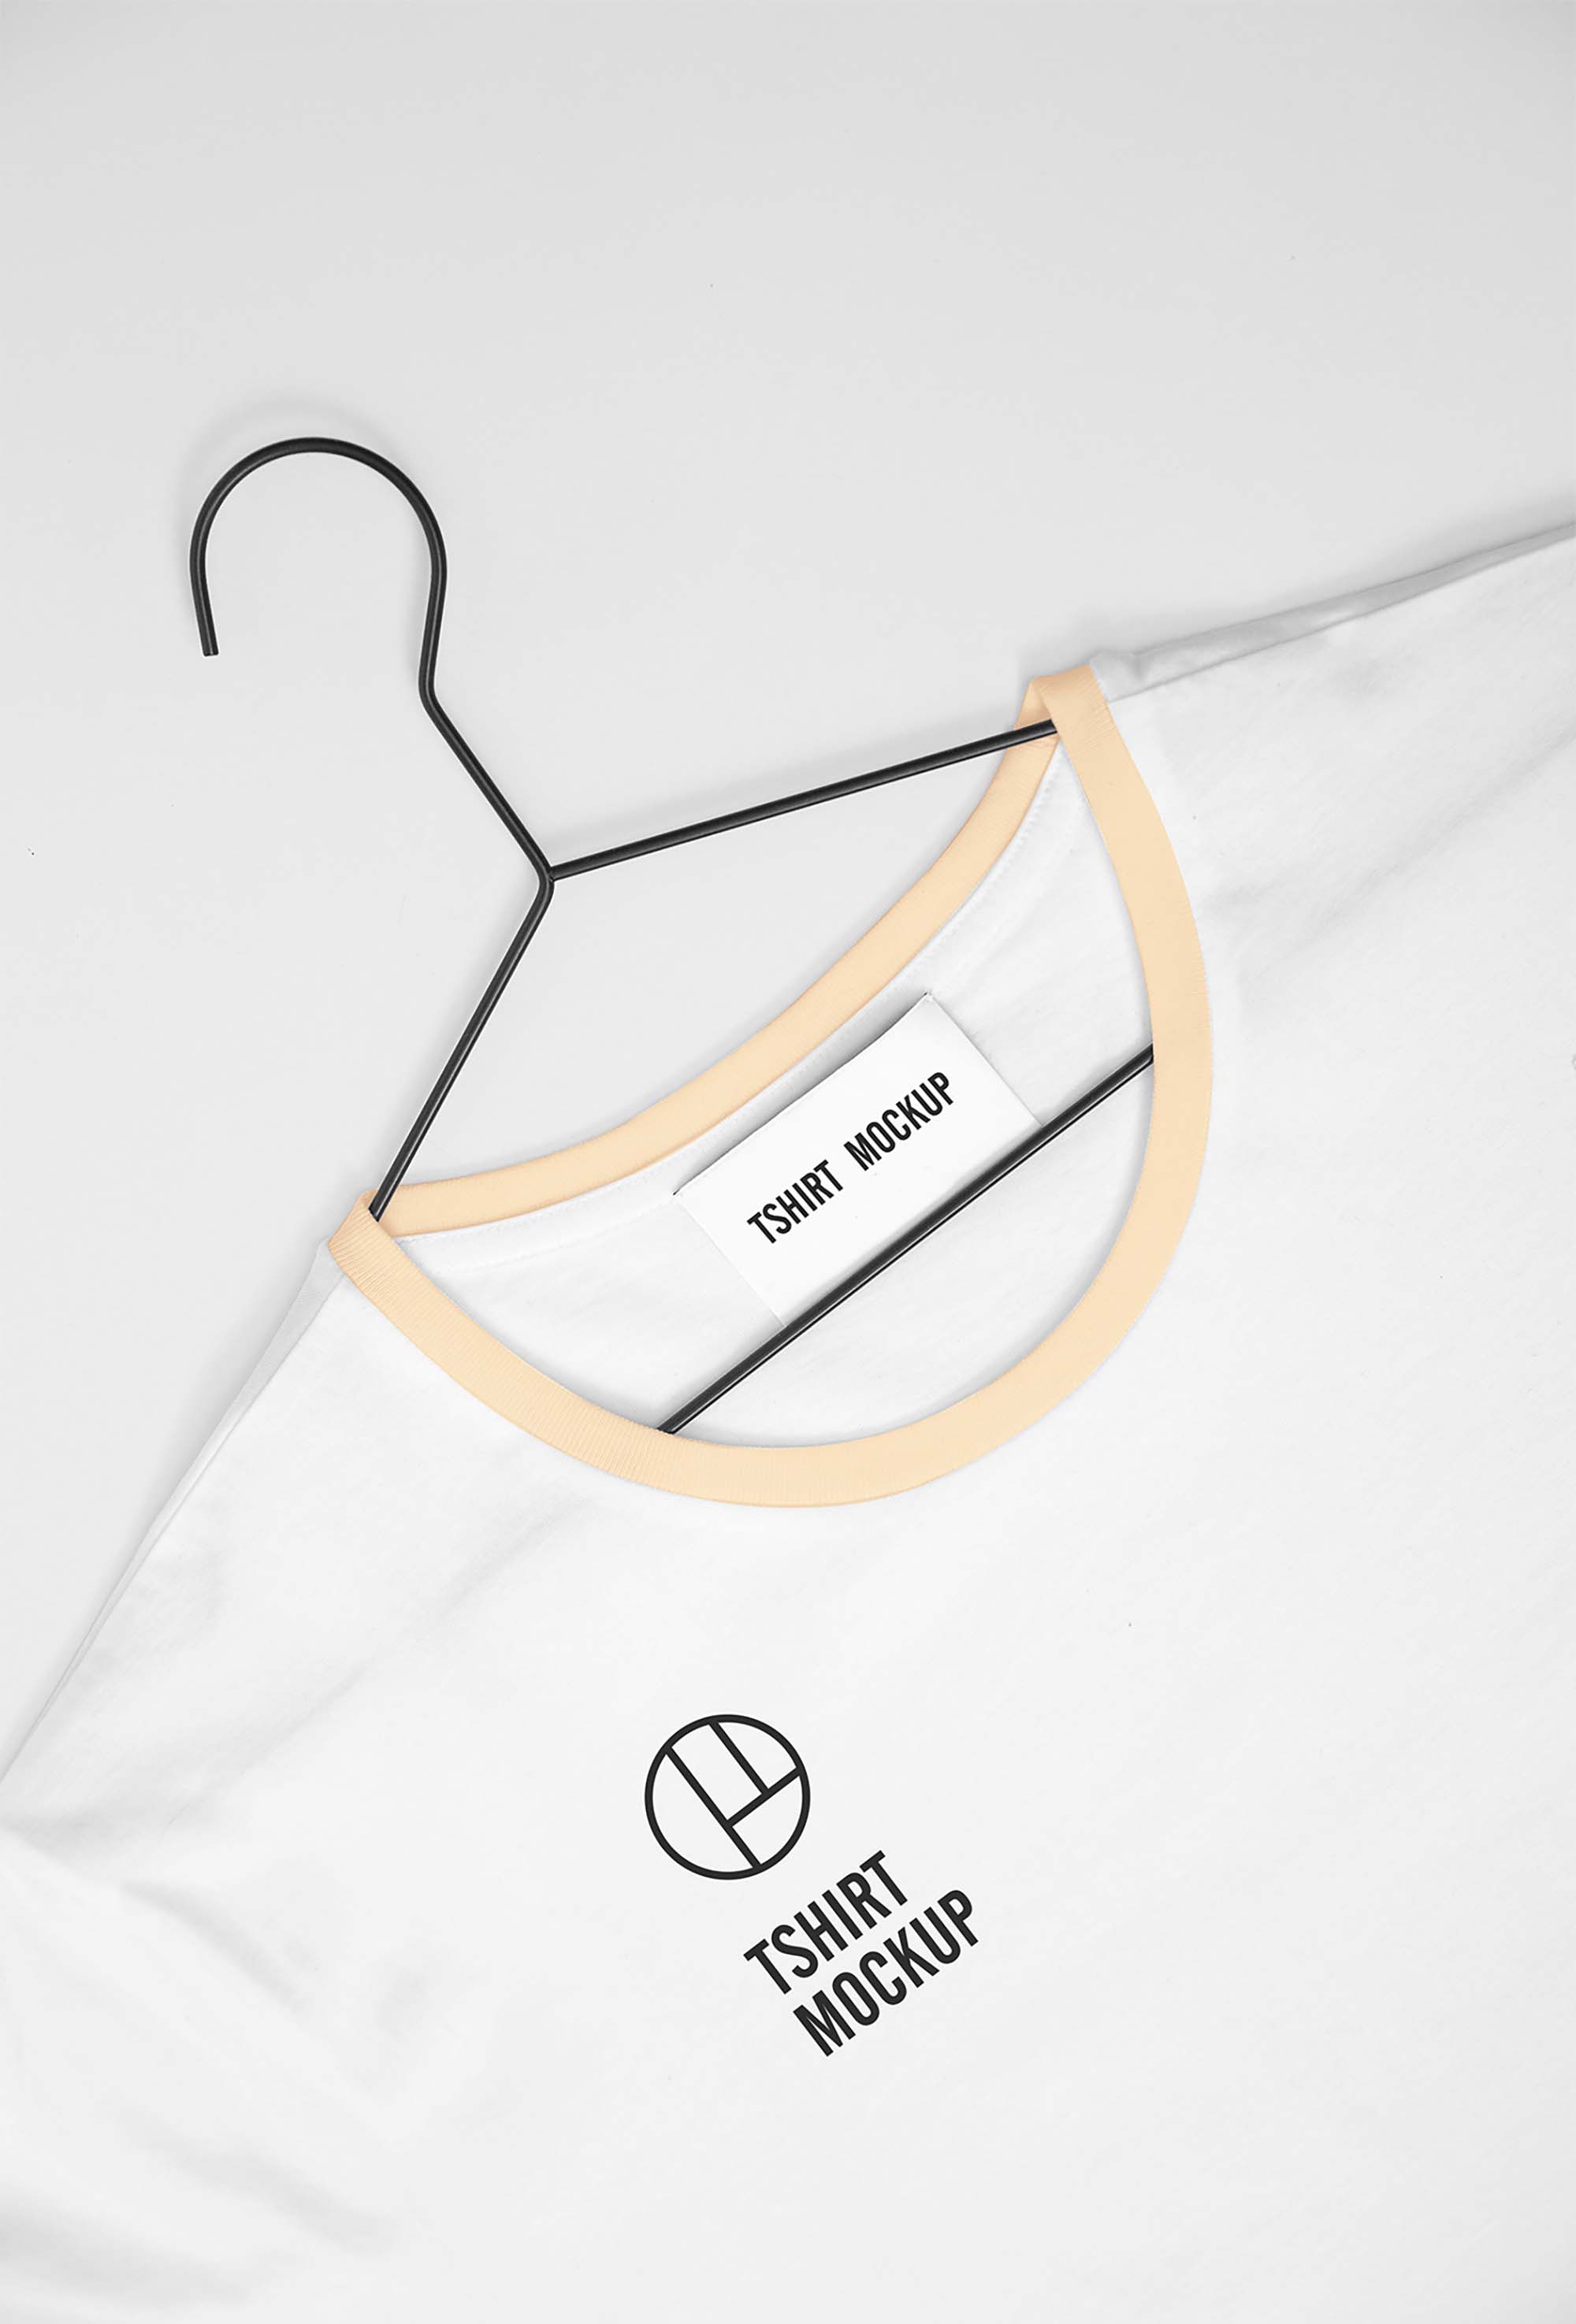 New White T-shirt Mockup